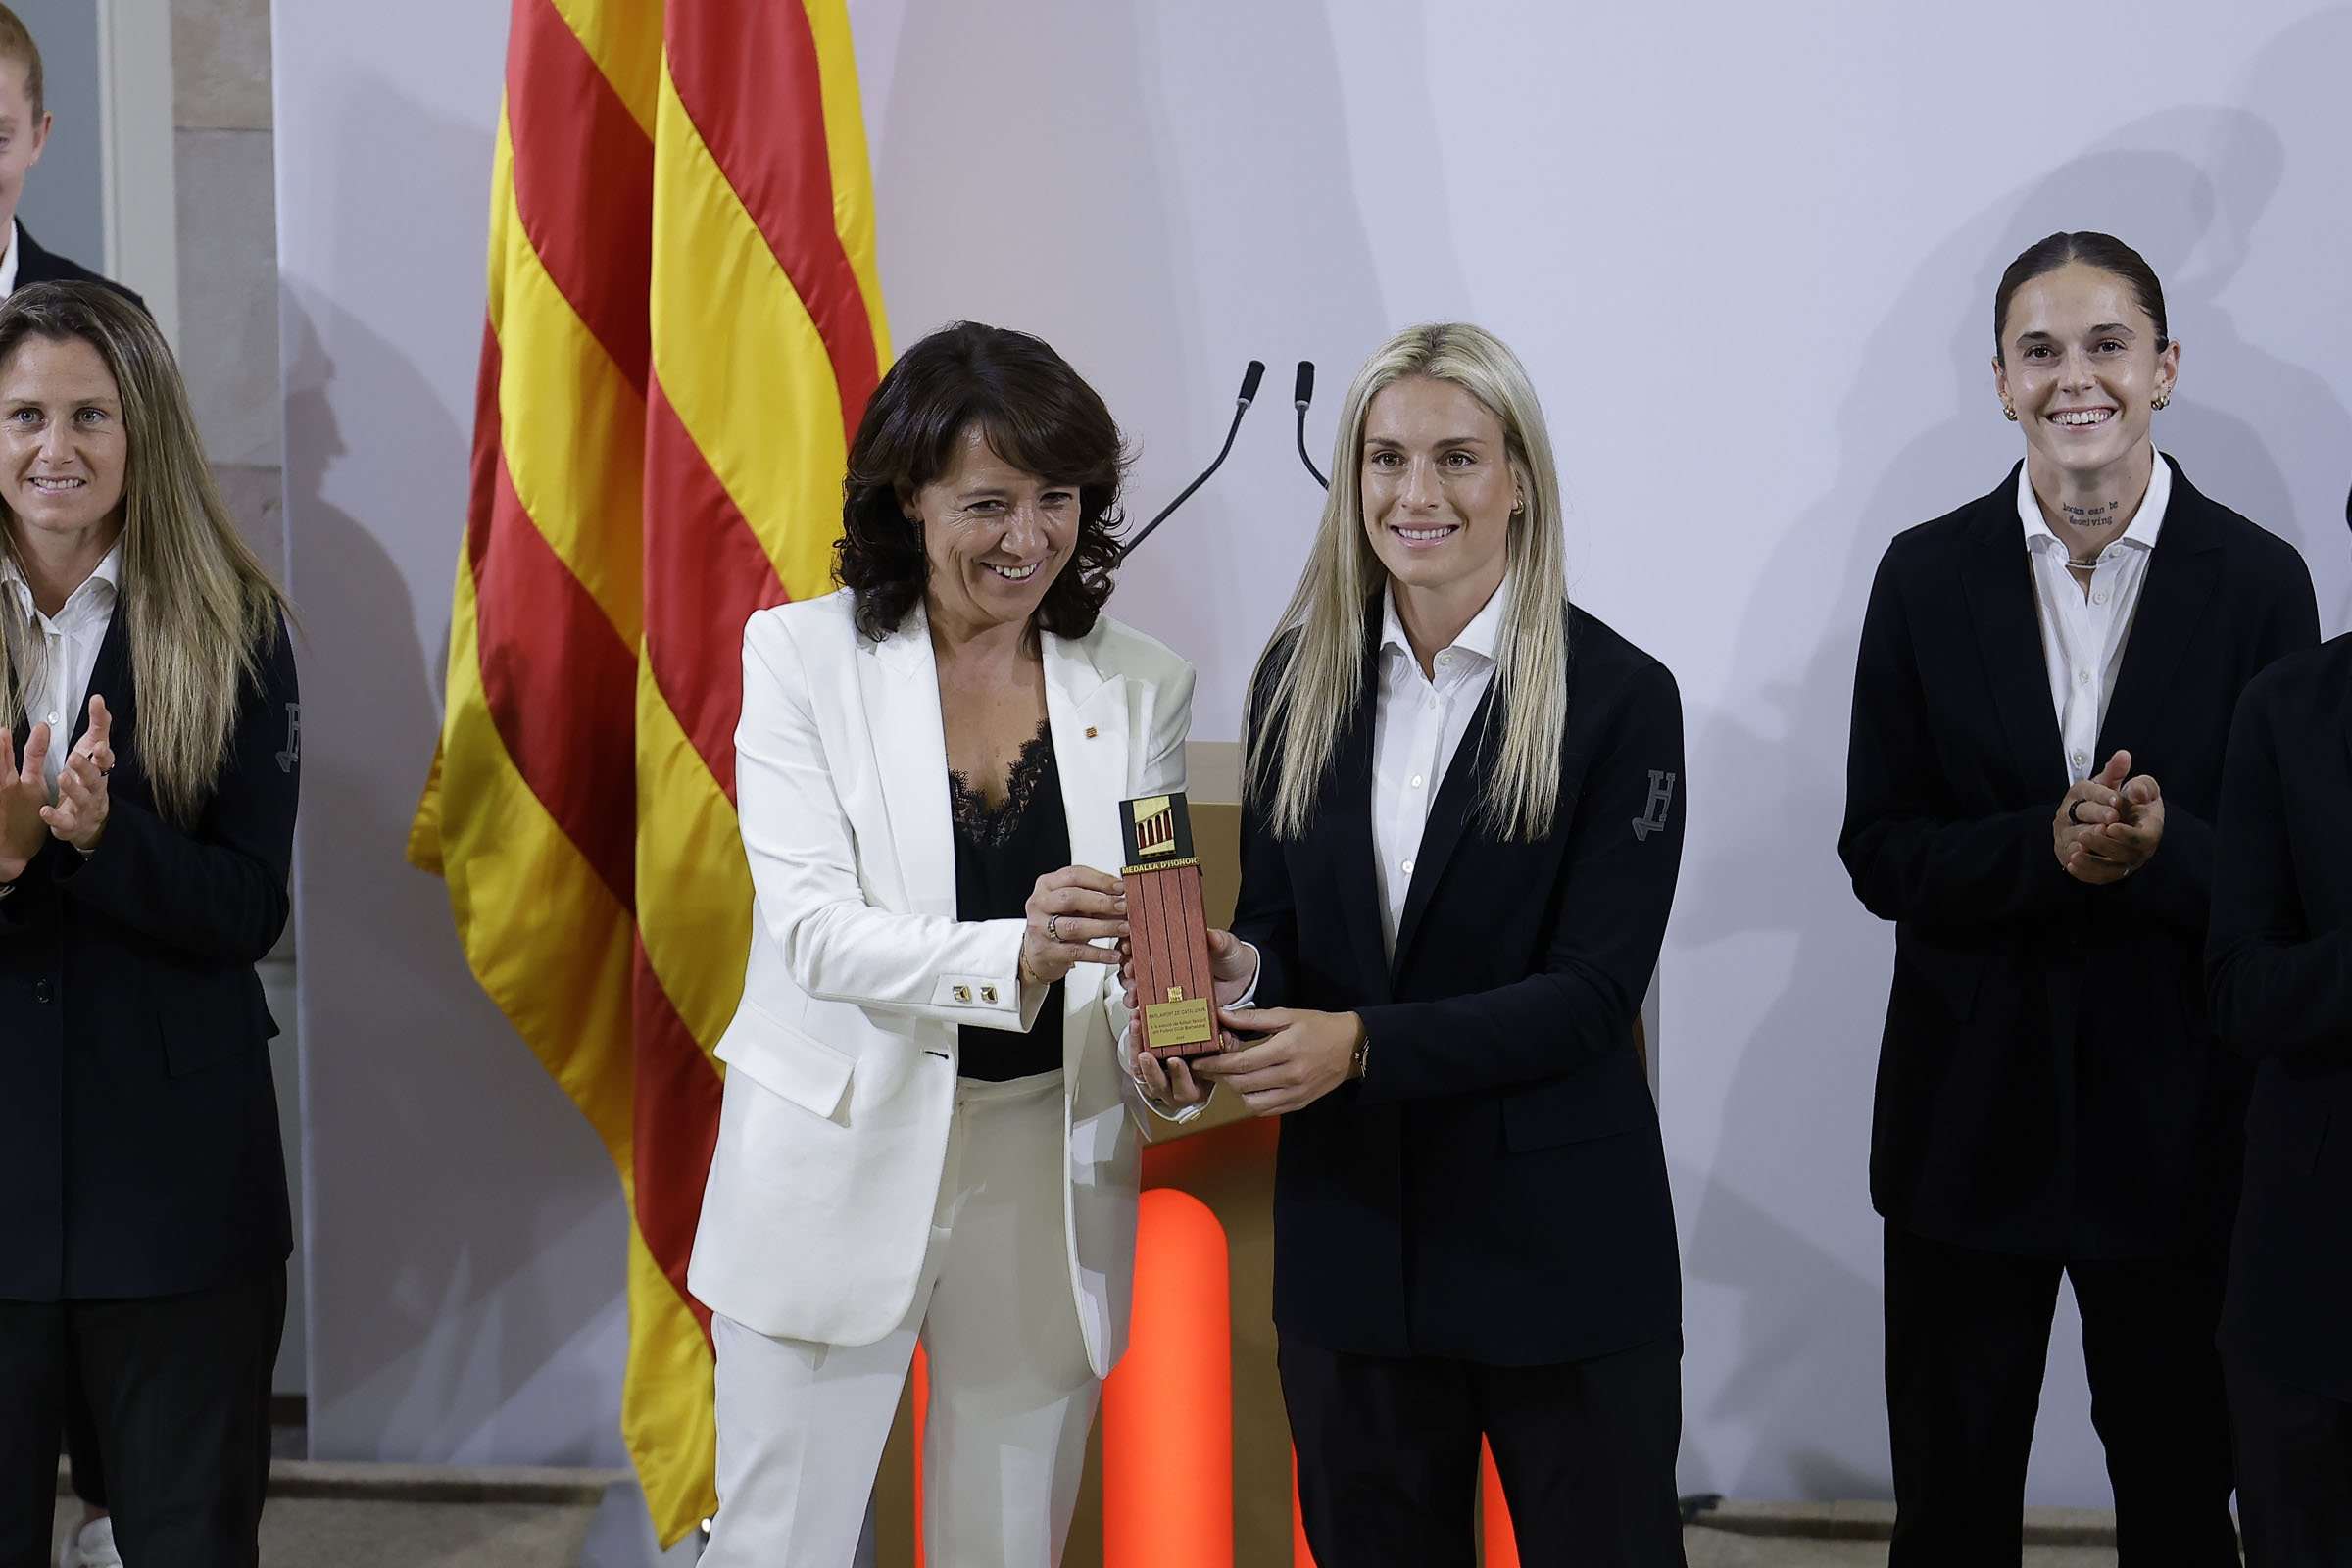 El Parlament de Catalunya lliura la Medalla d’Honor al Barça femení: " No volem més faltes de respecte"